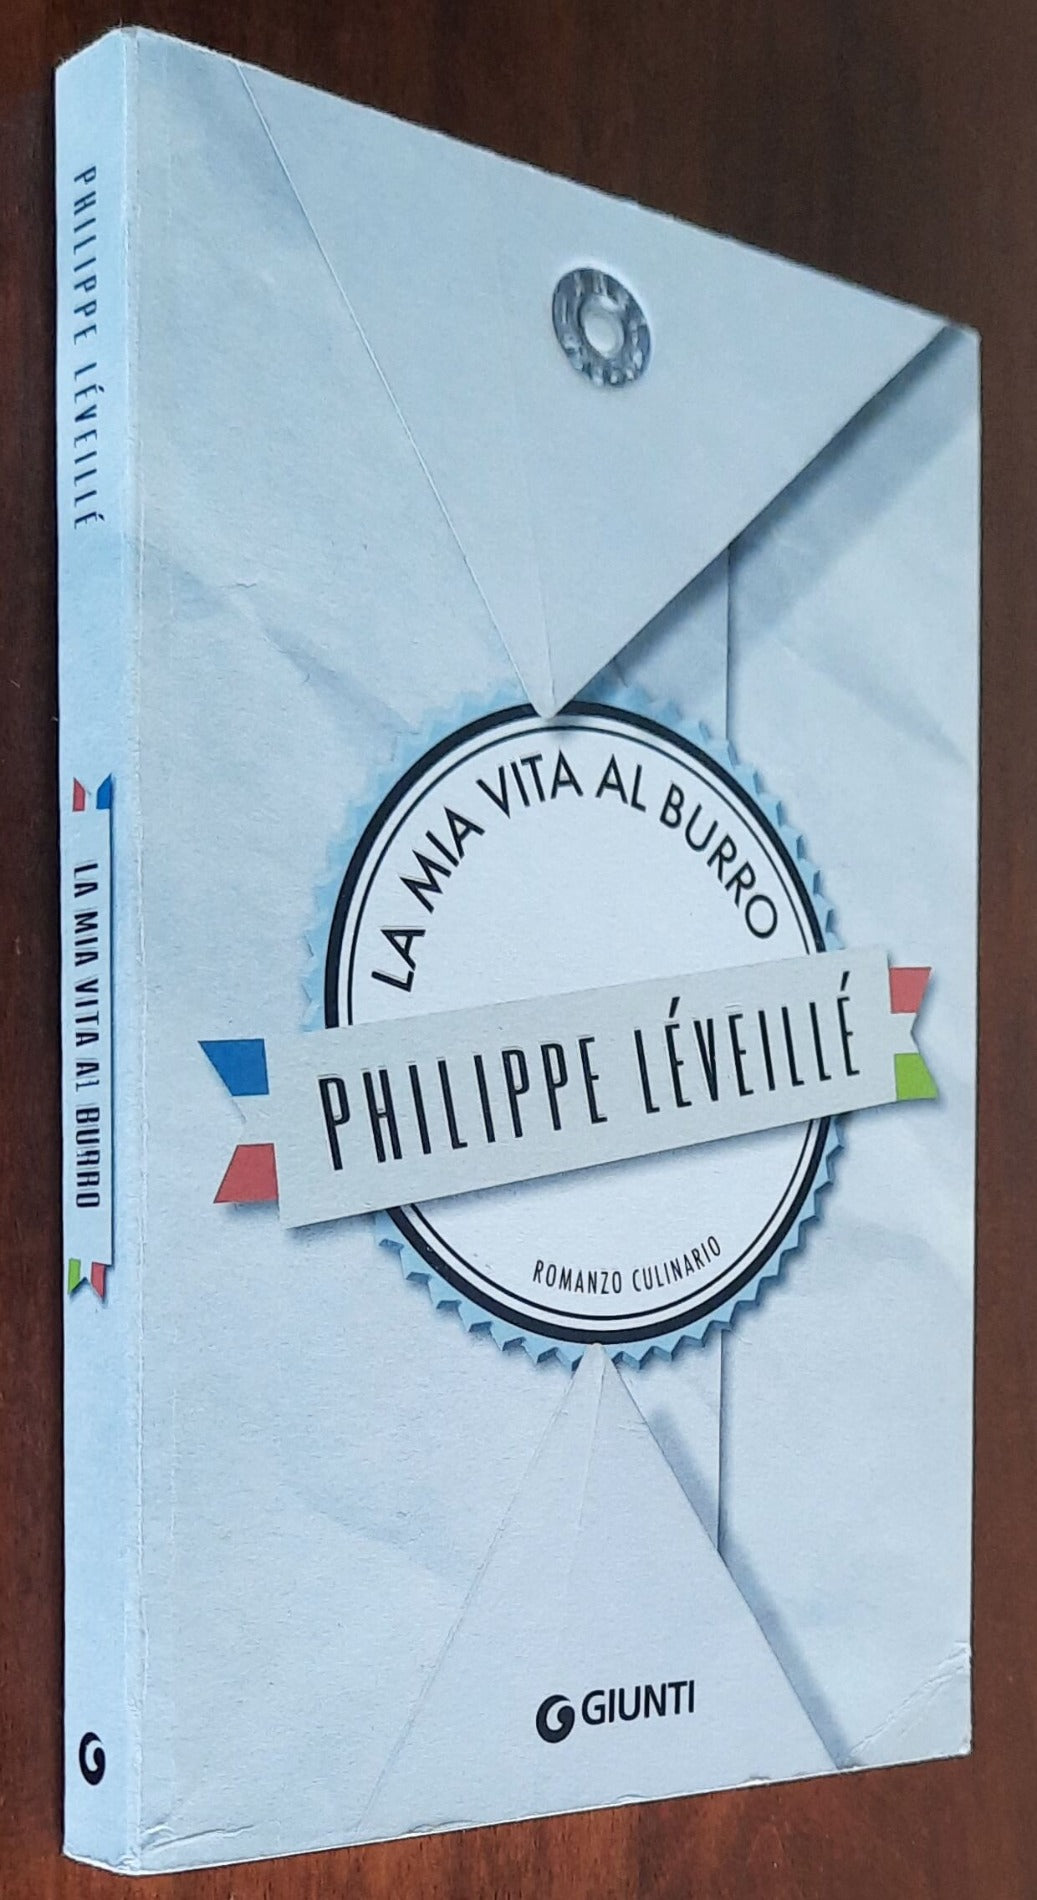 La mia vita al burro - di Philippe Leveille